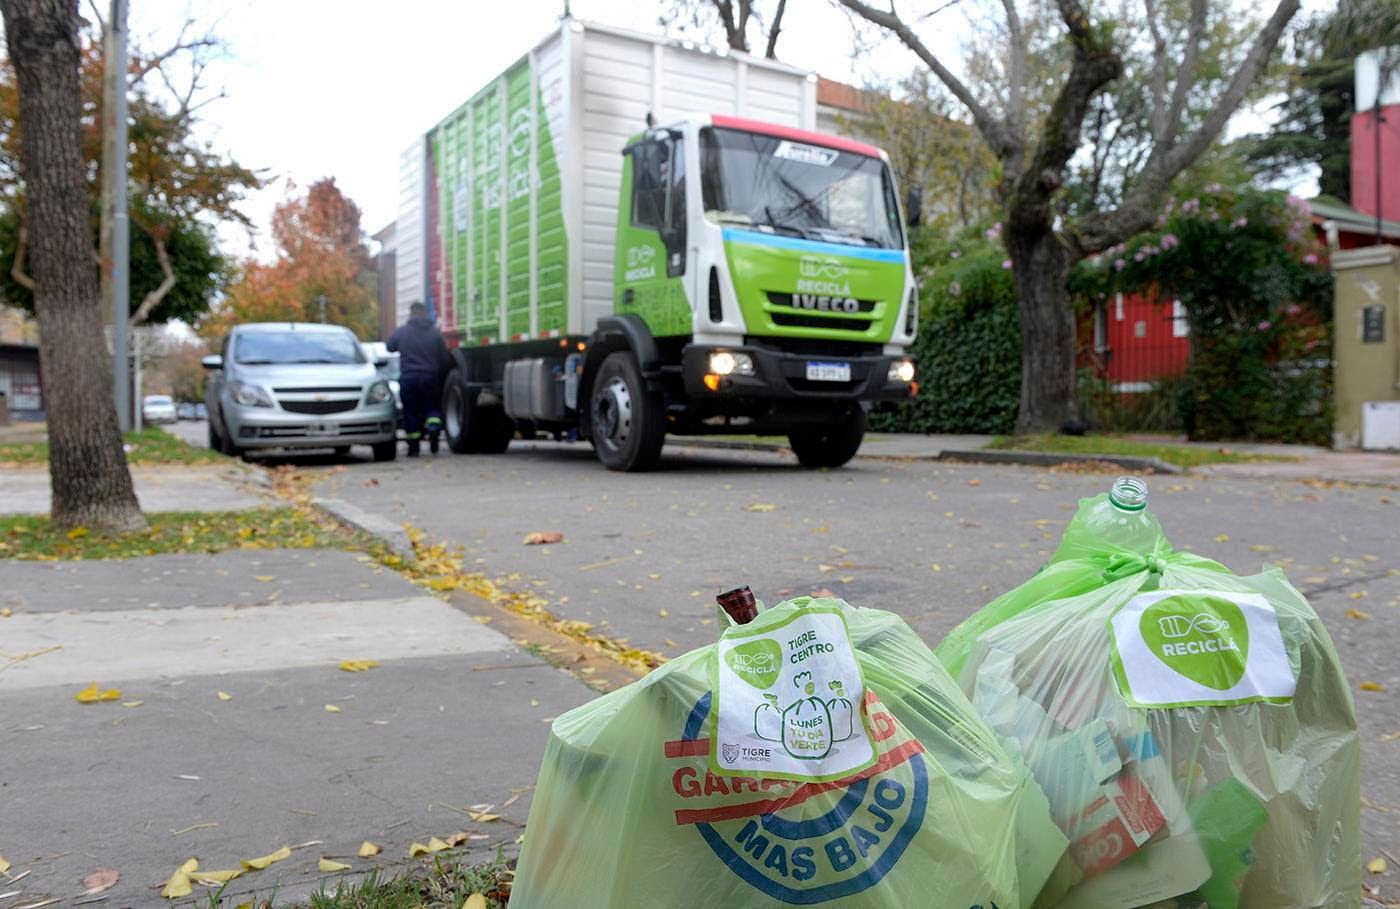 Tigre: El municipio alcanzó la cifra histórica de 4 millones de kilos de reciclables recolectados